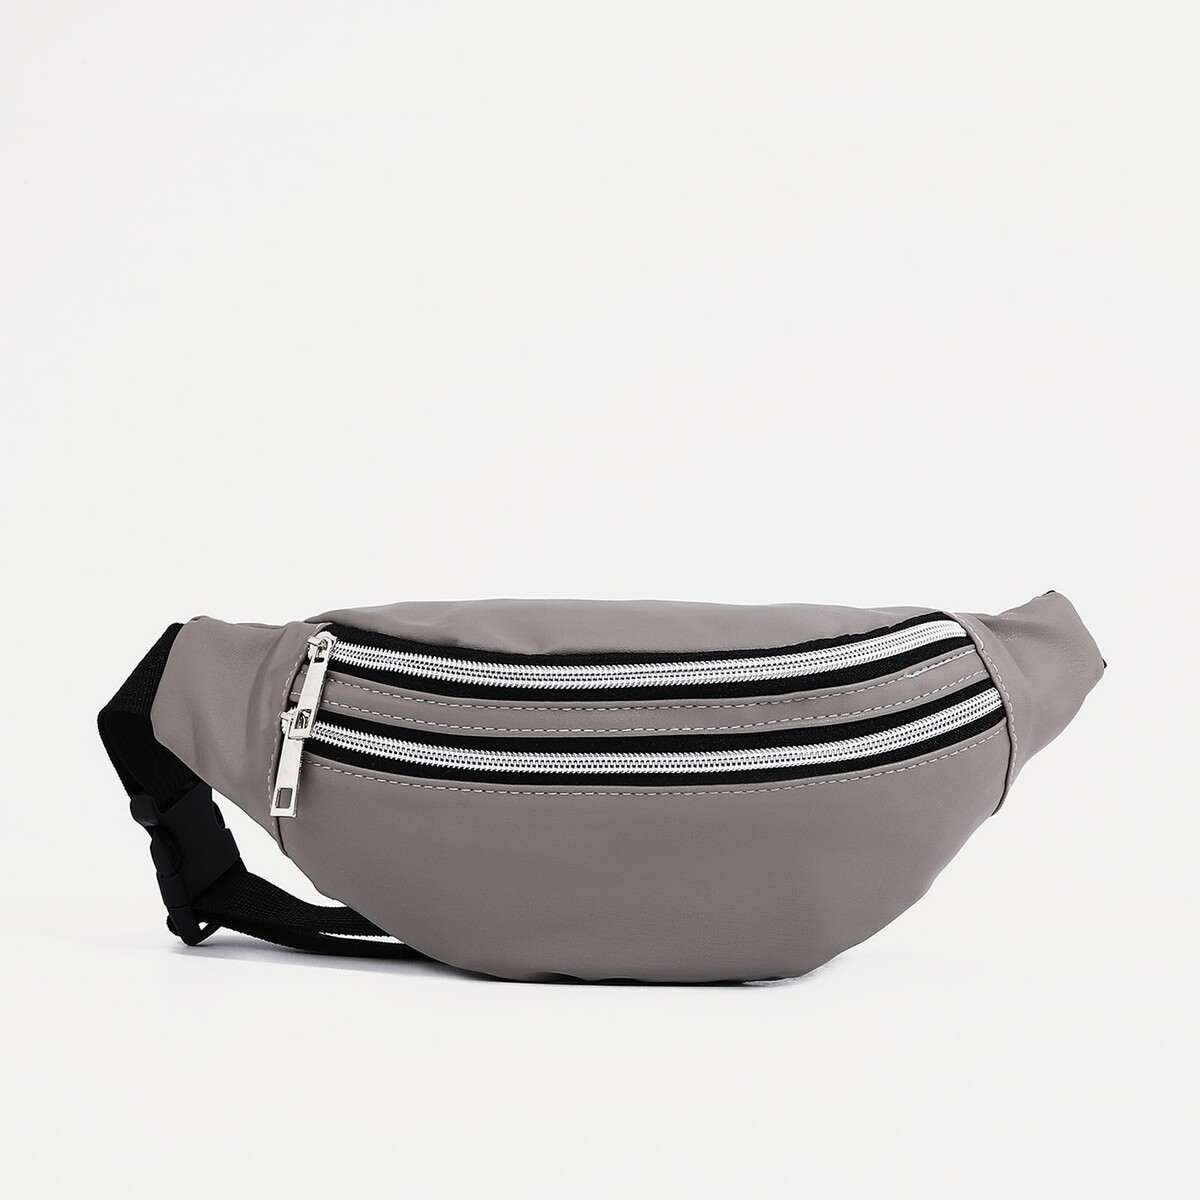 Поясная сумка на молнии, наружный карман, цвет серый поясная сумка рюкзак tatonka hip sling pack серый